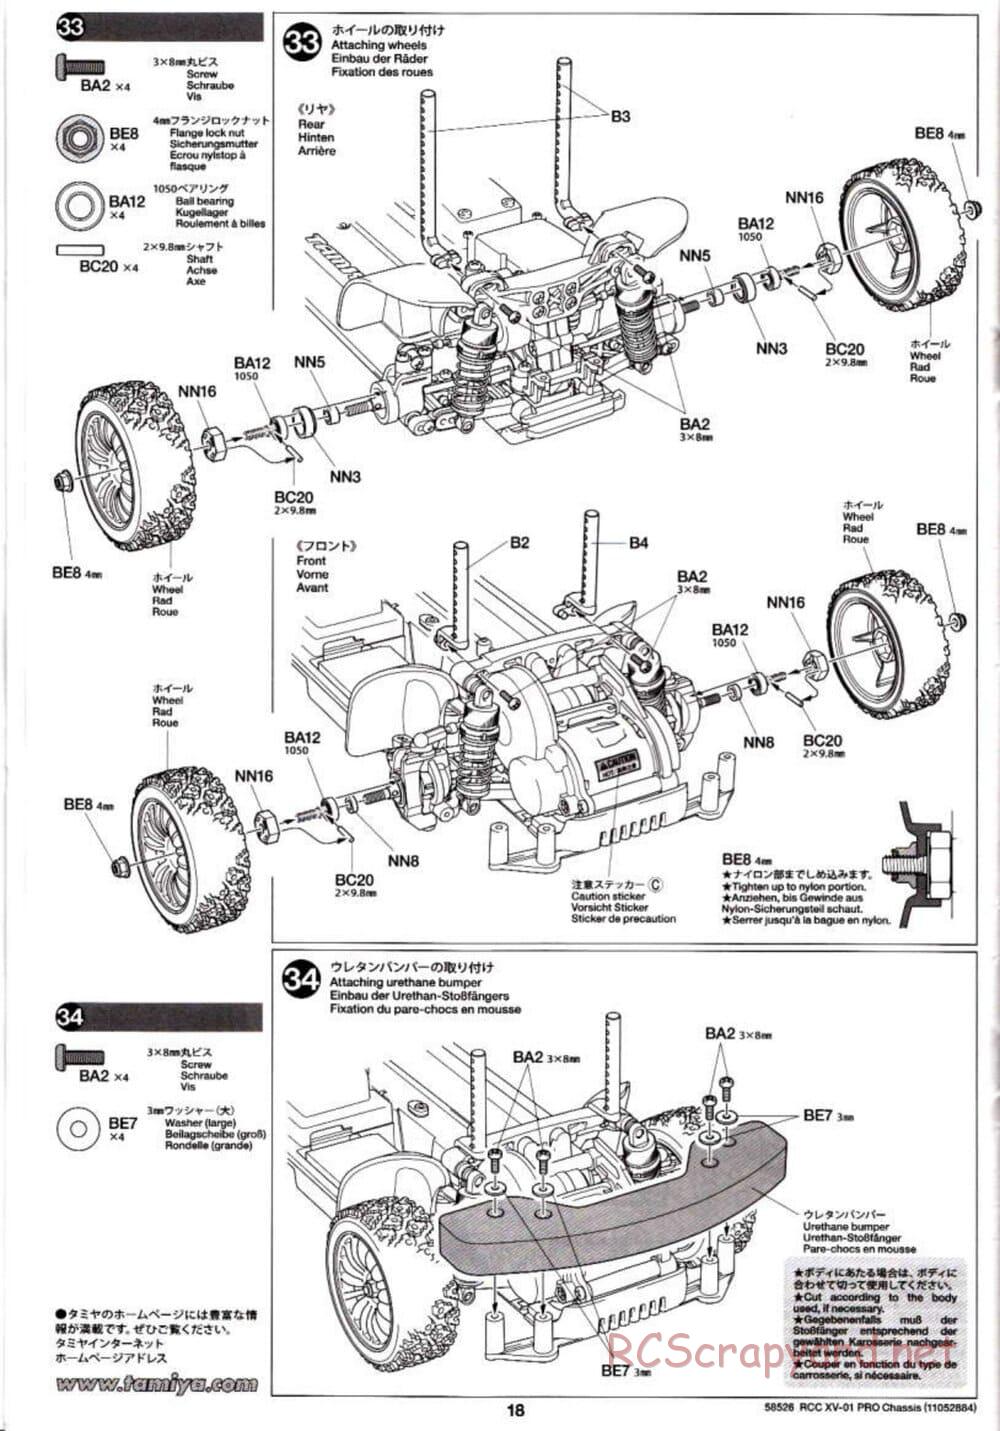 Tamiya - XV-01 PRO Chassis - Manual - Page 18